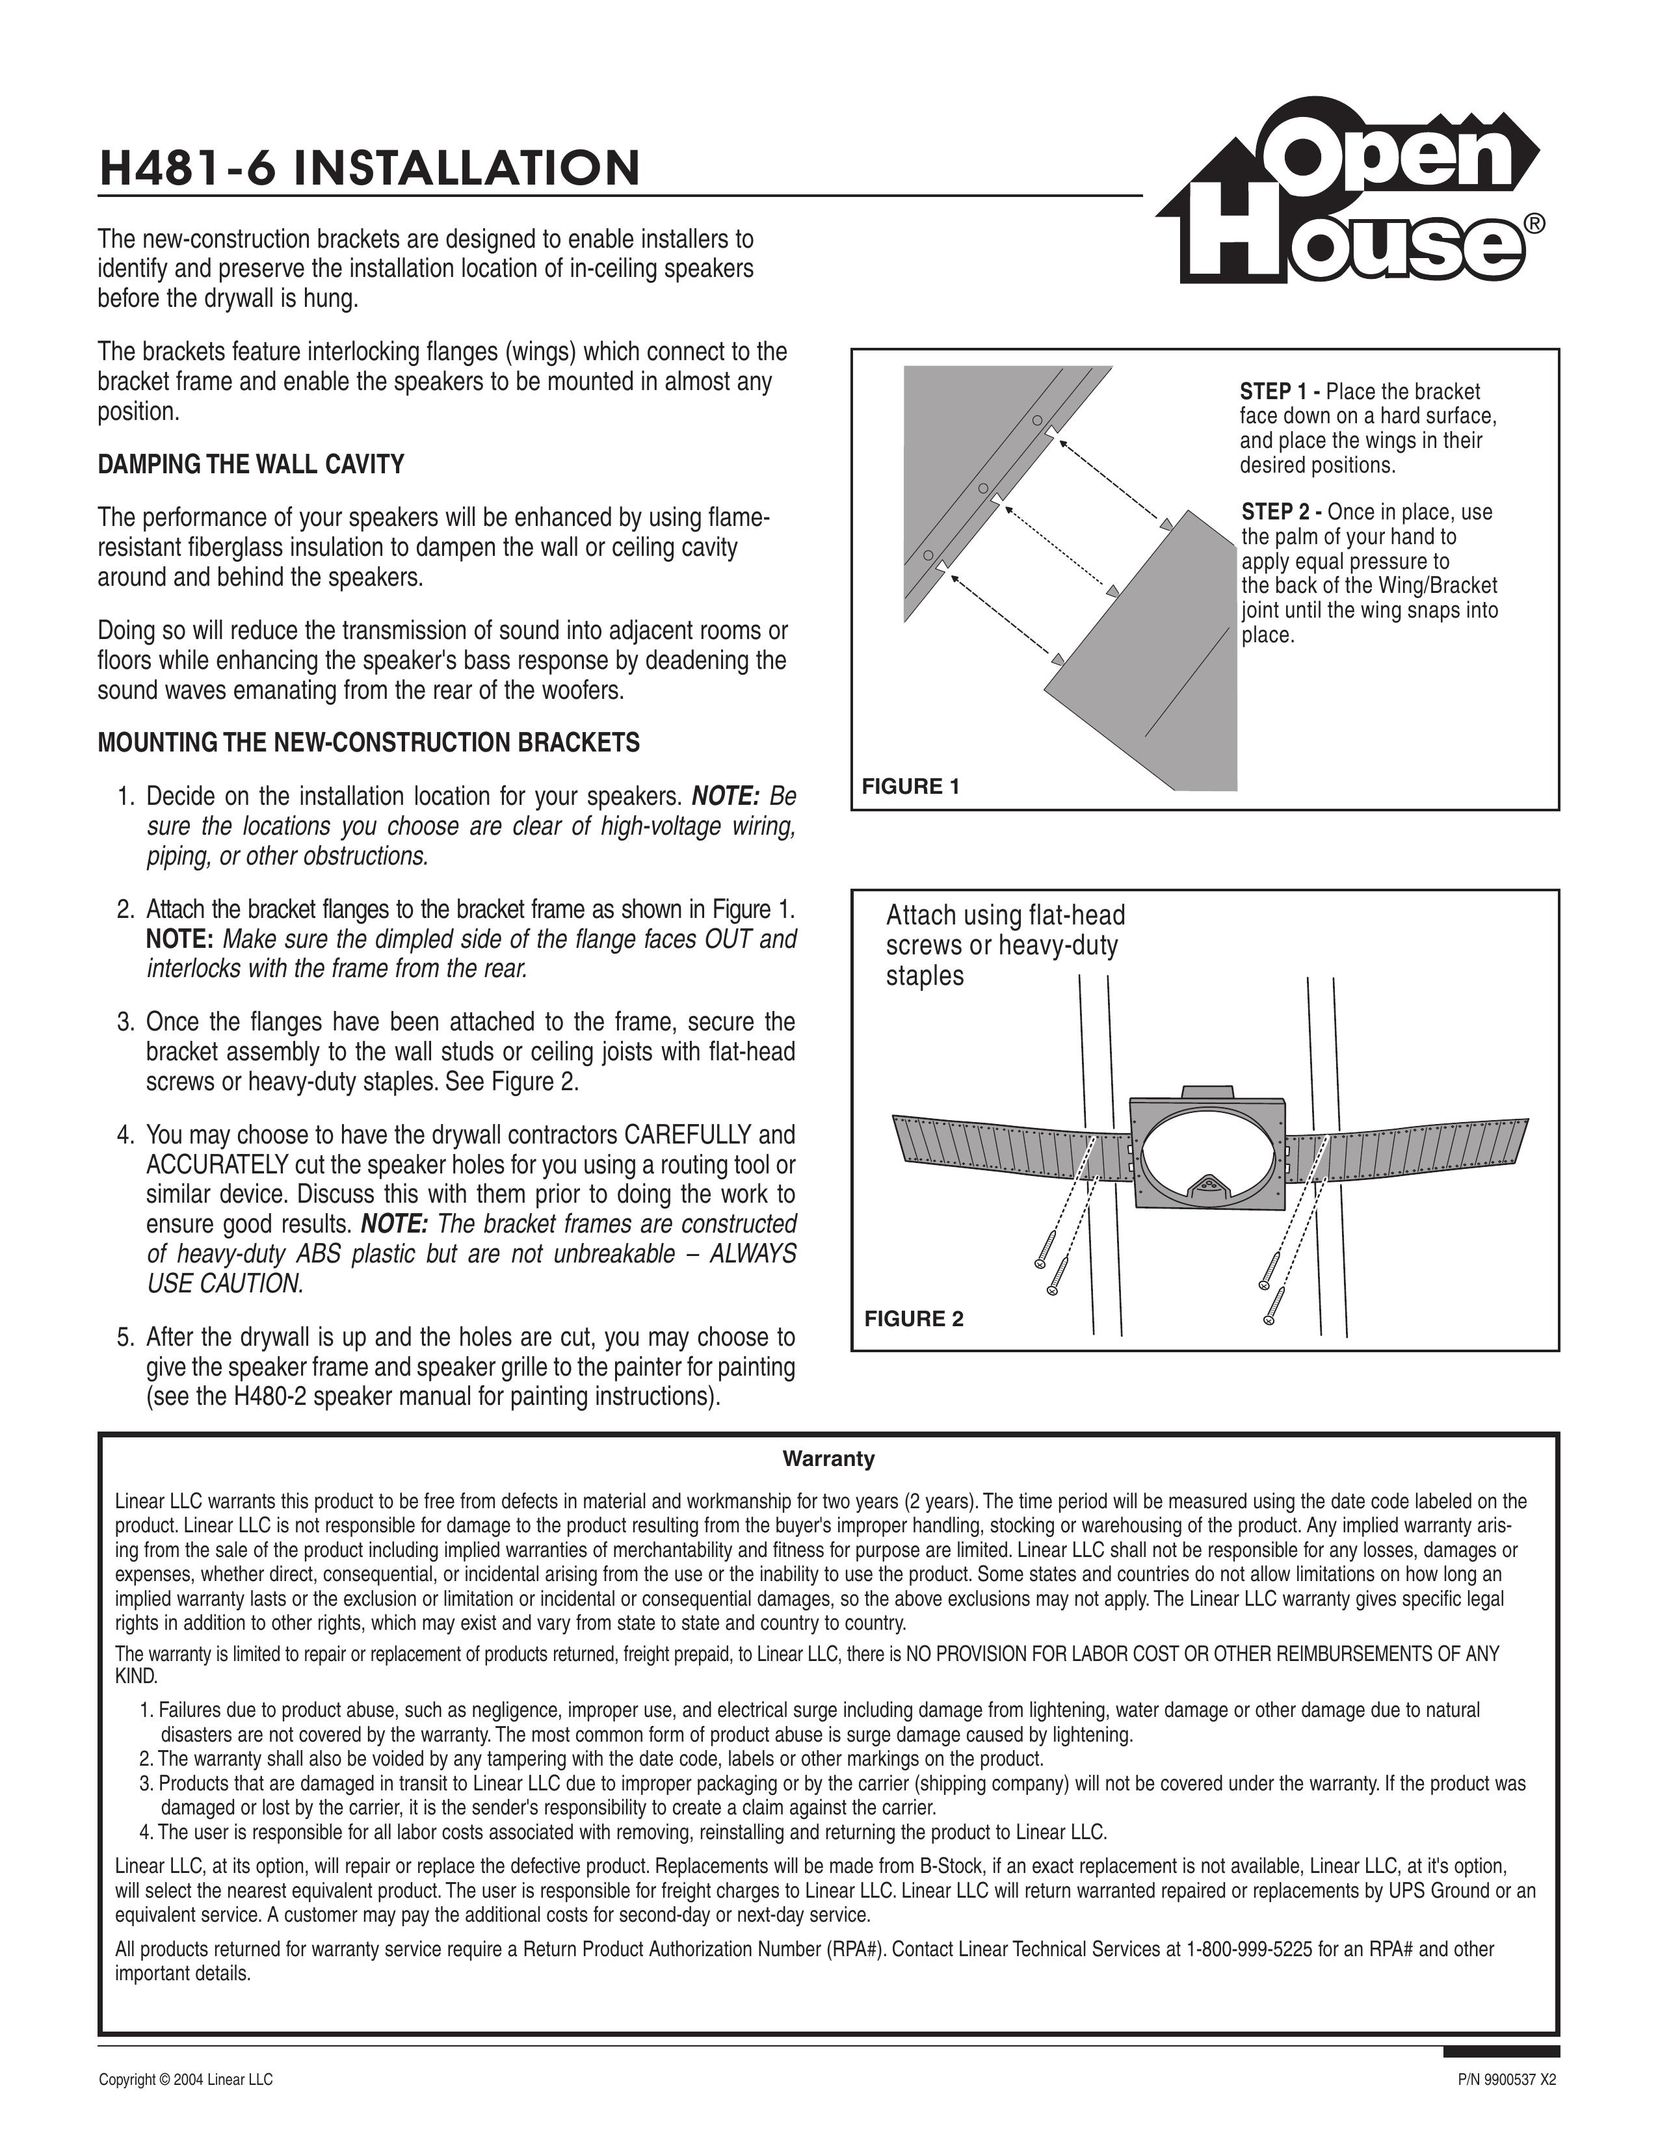 Linear H481-6 Speaker User Manual